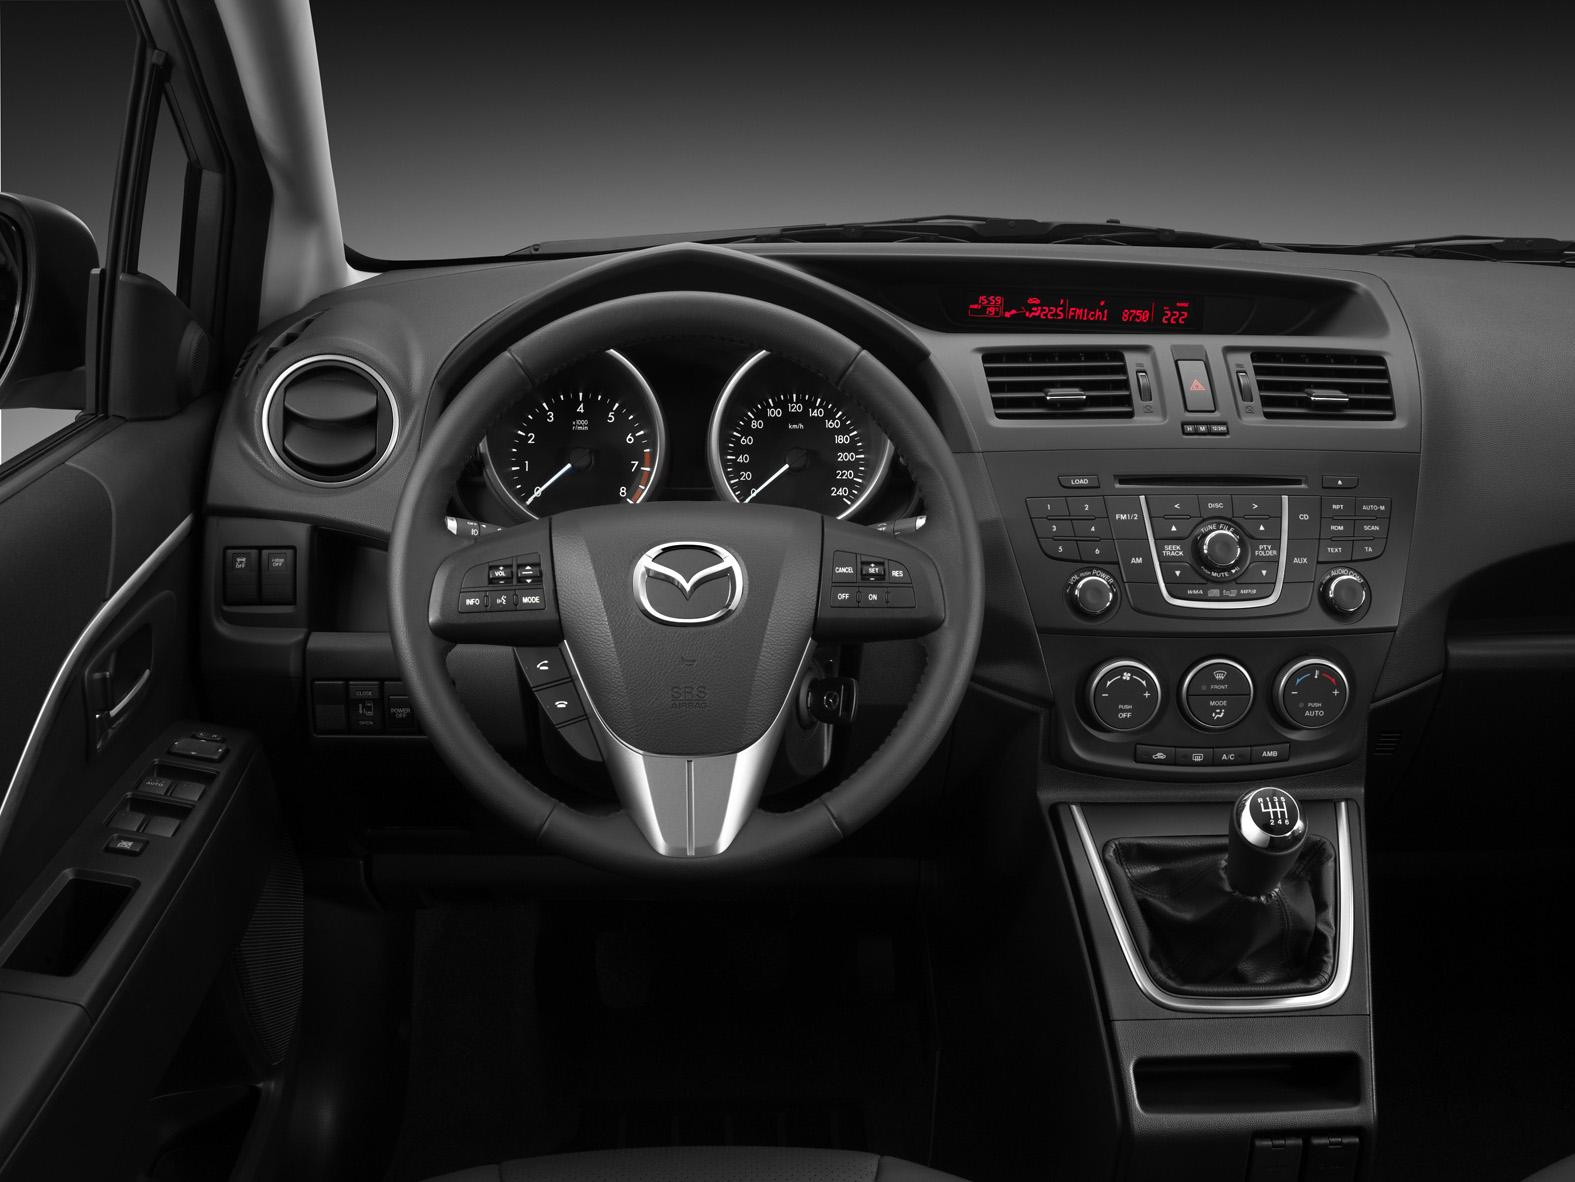 2011 Mazda 5